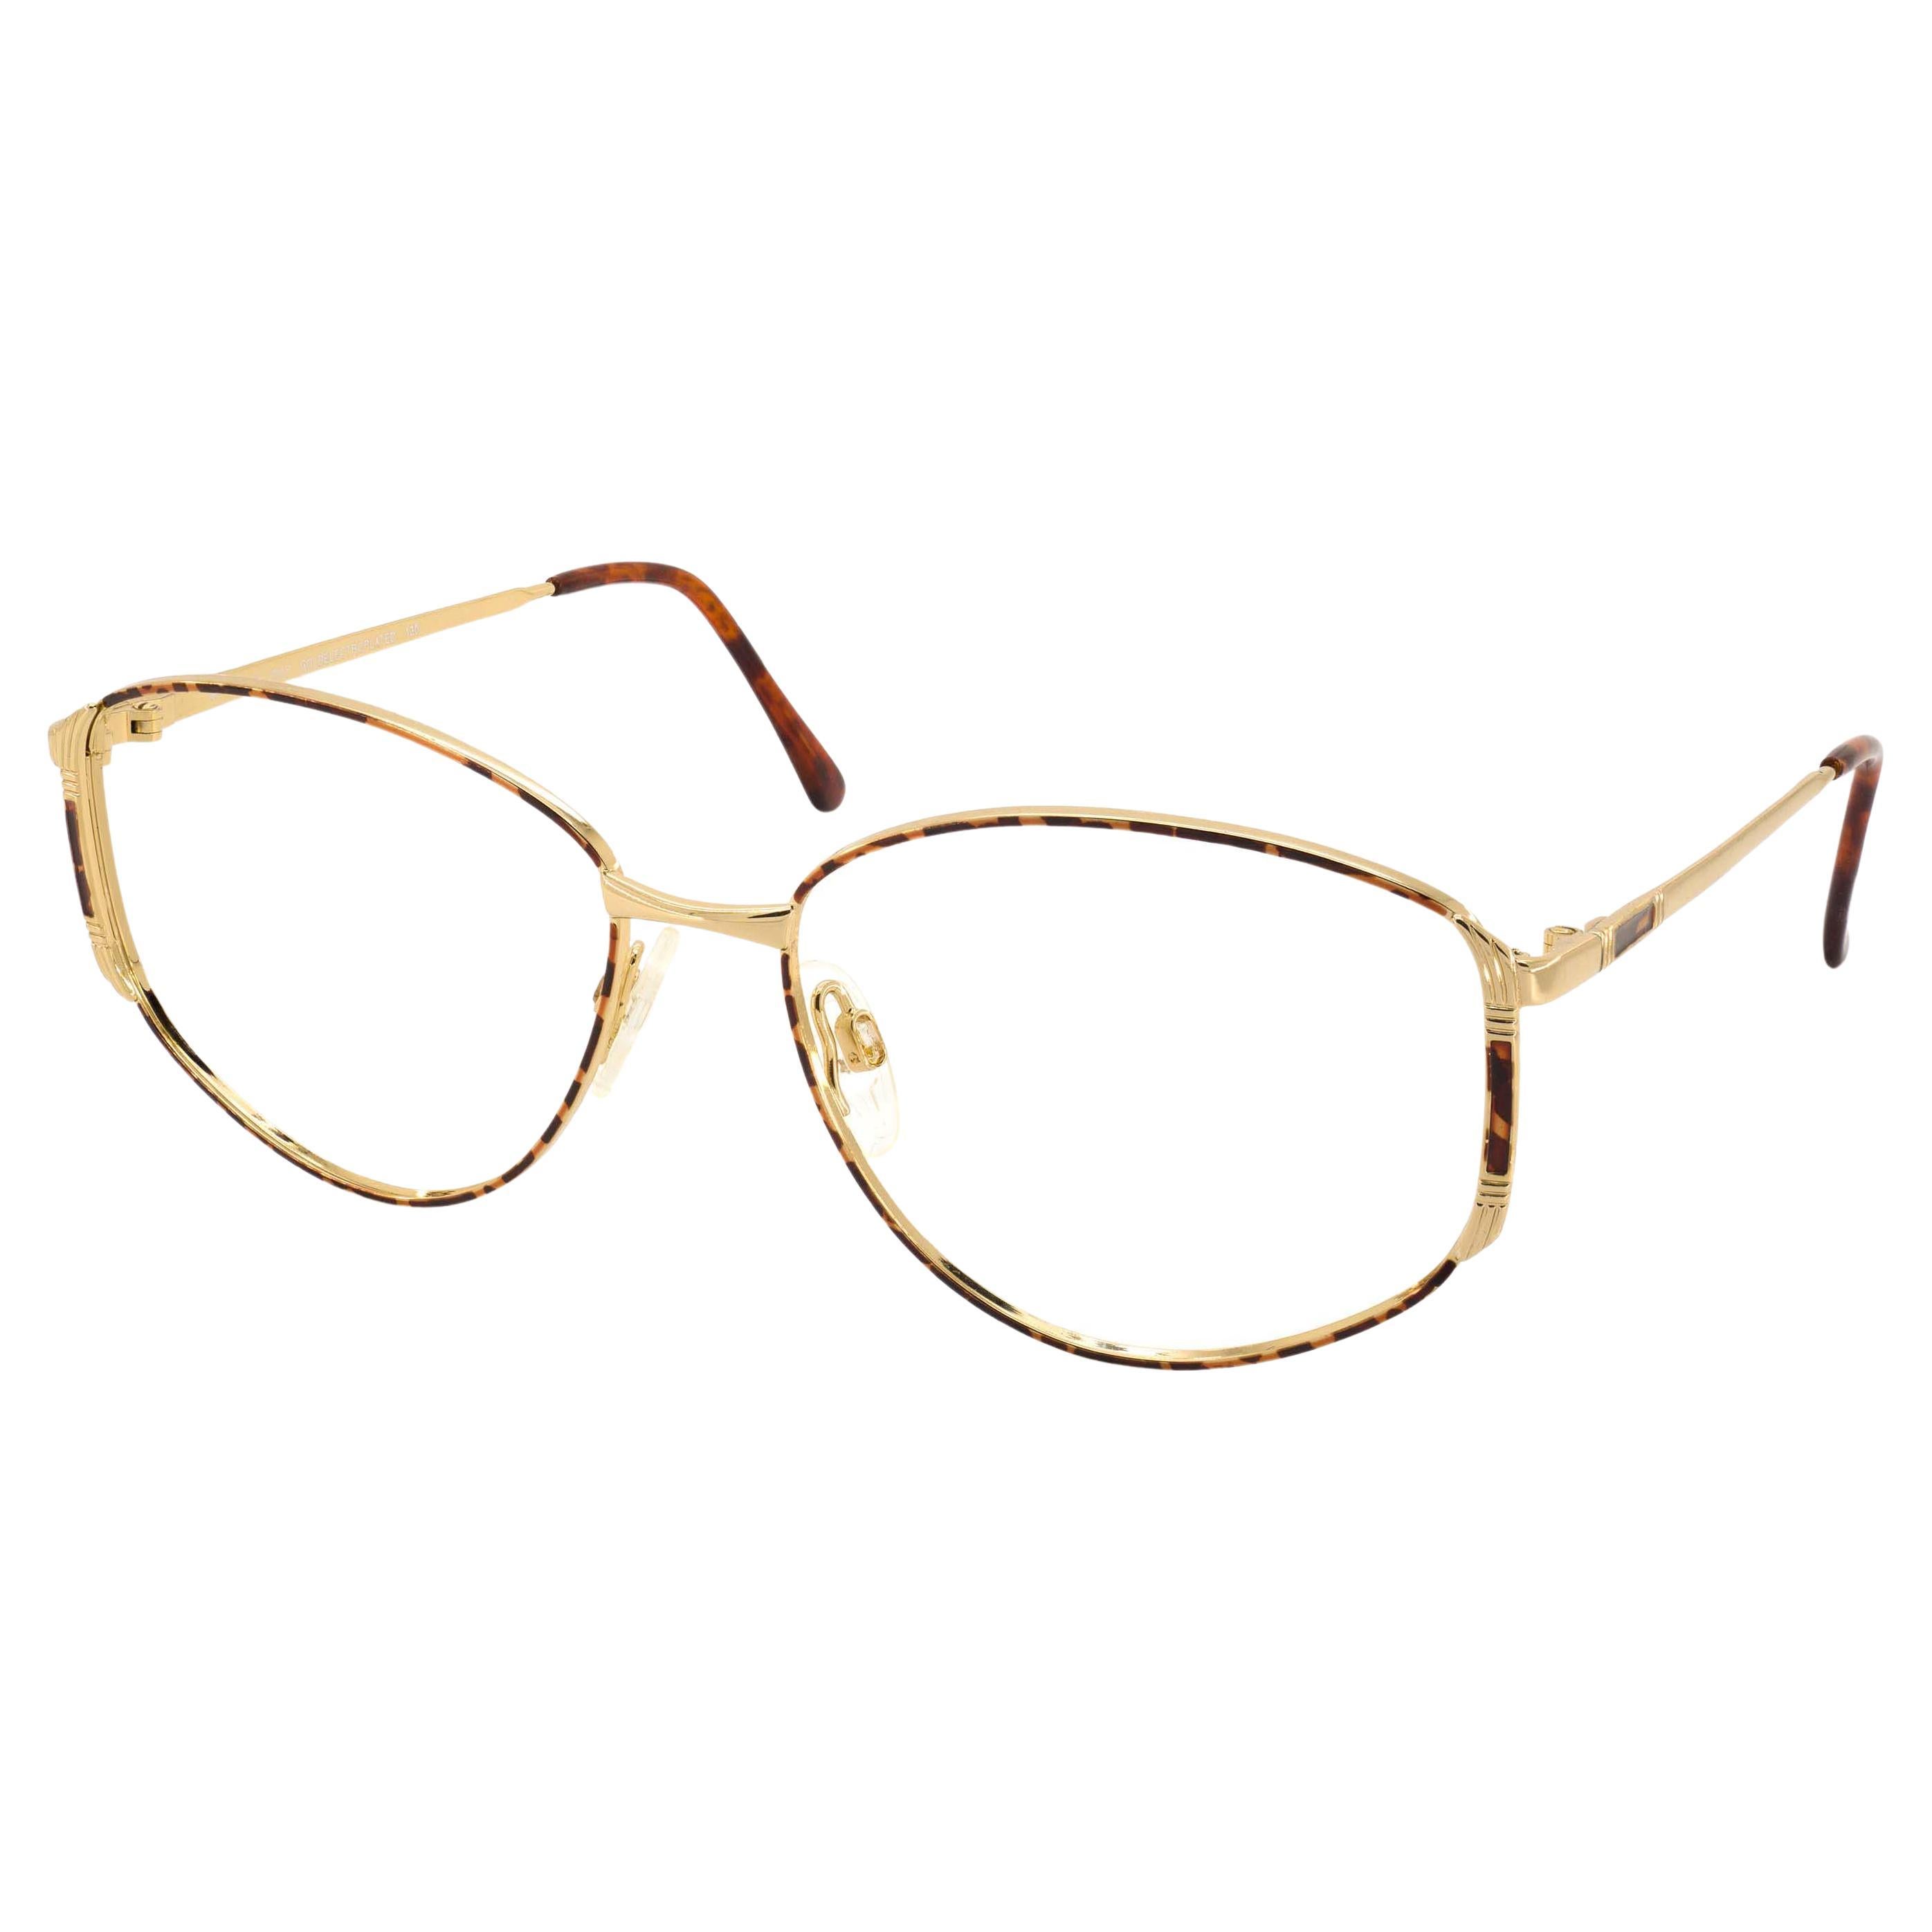 Luxottica goldenelectroplated vintage glasses frame For Sale